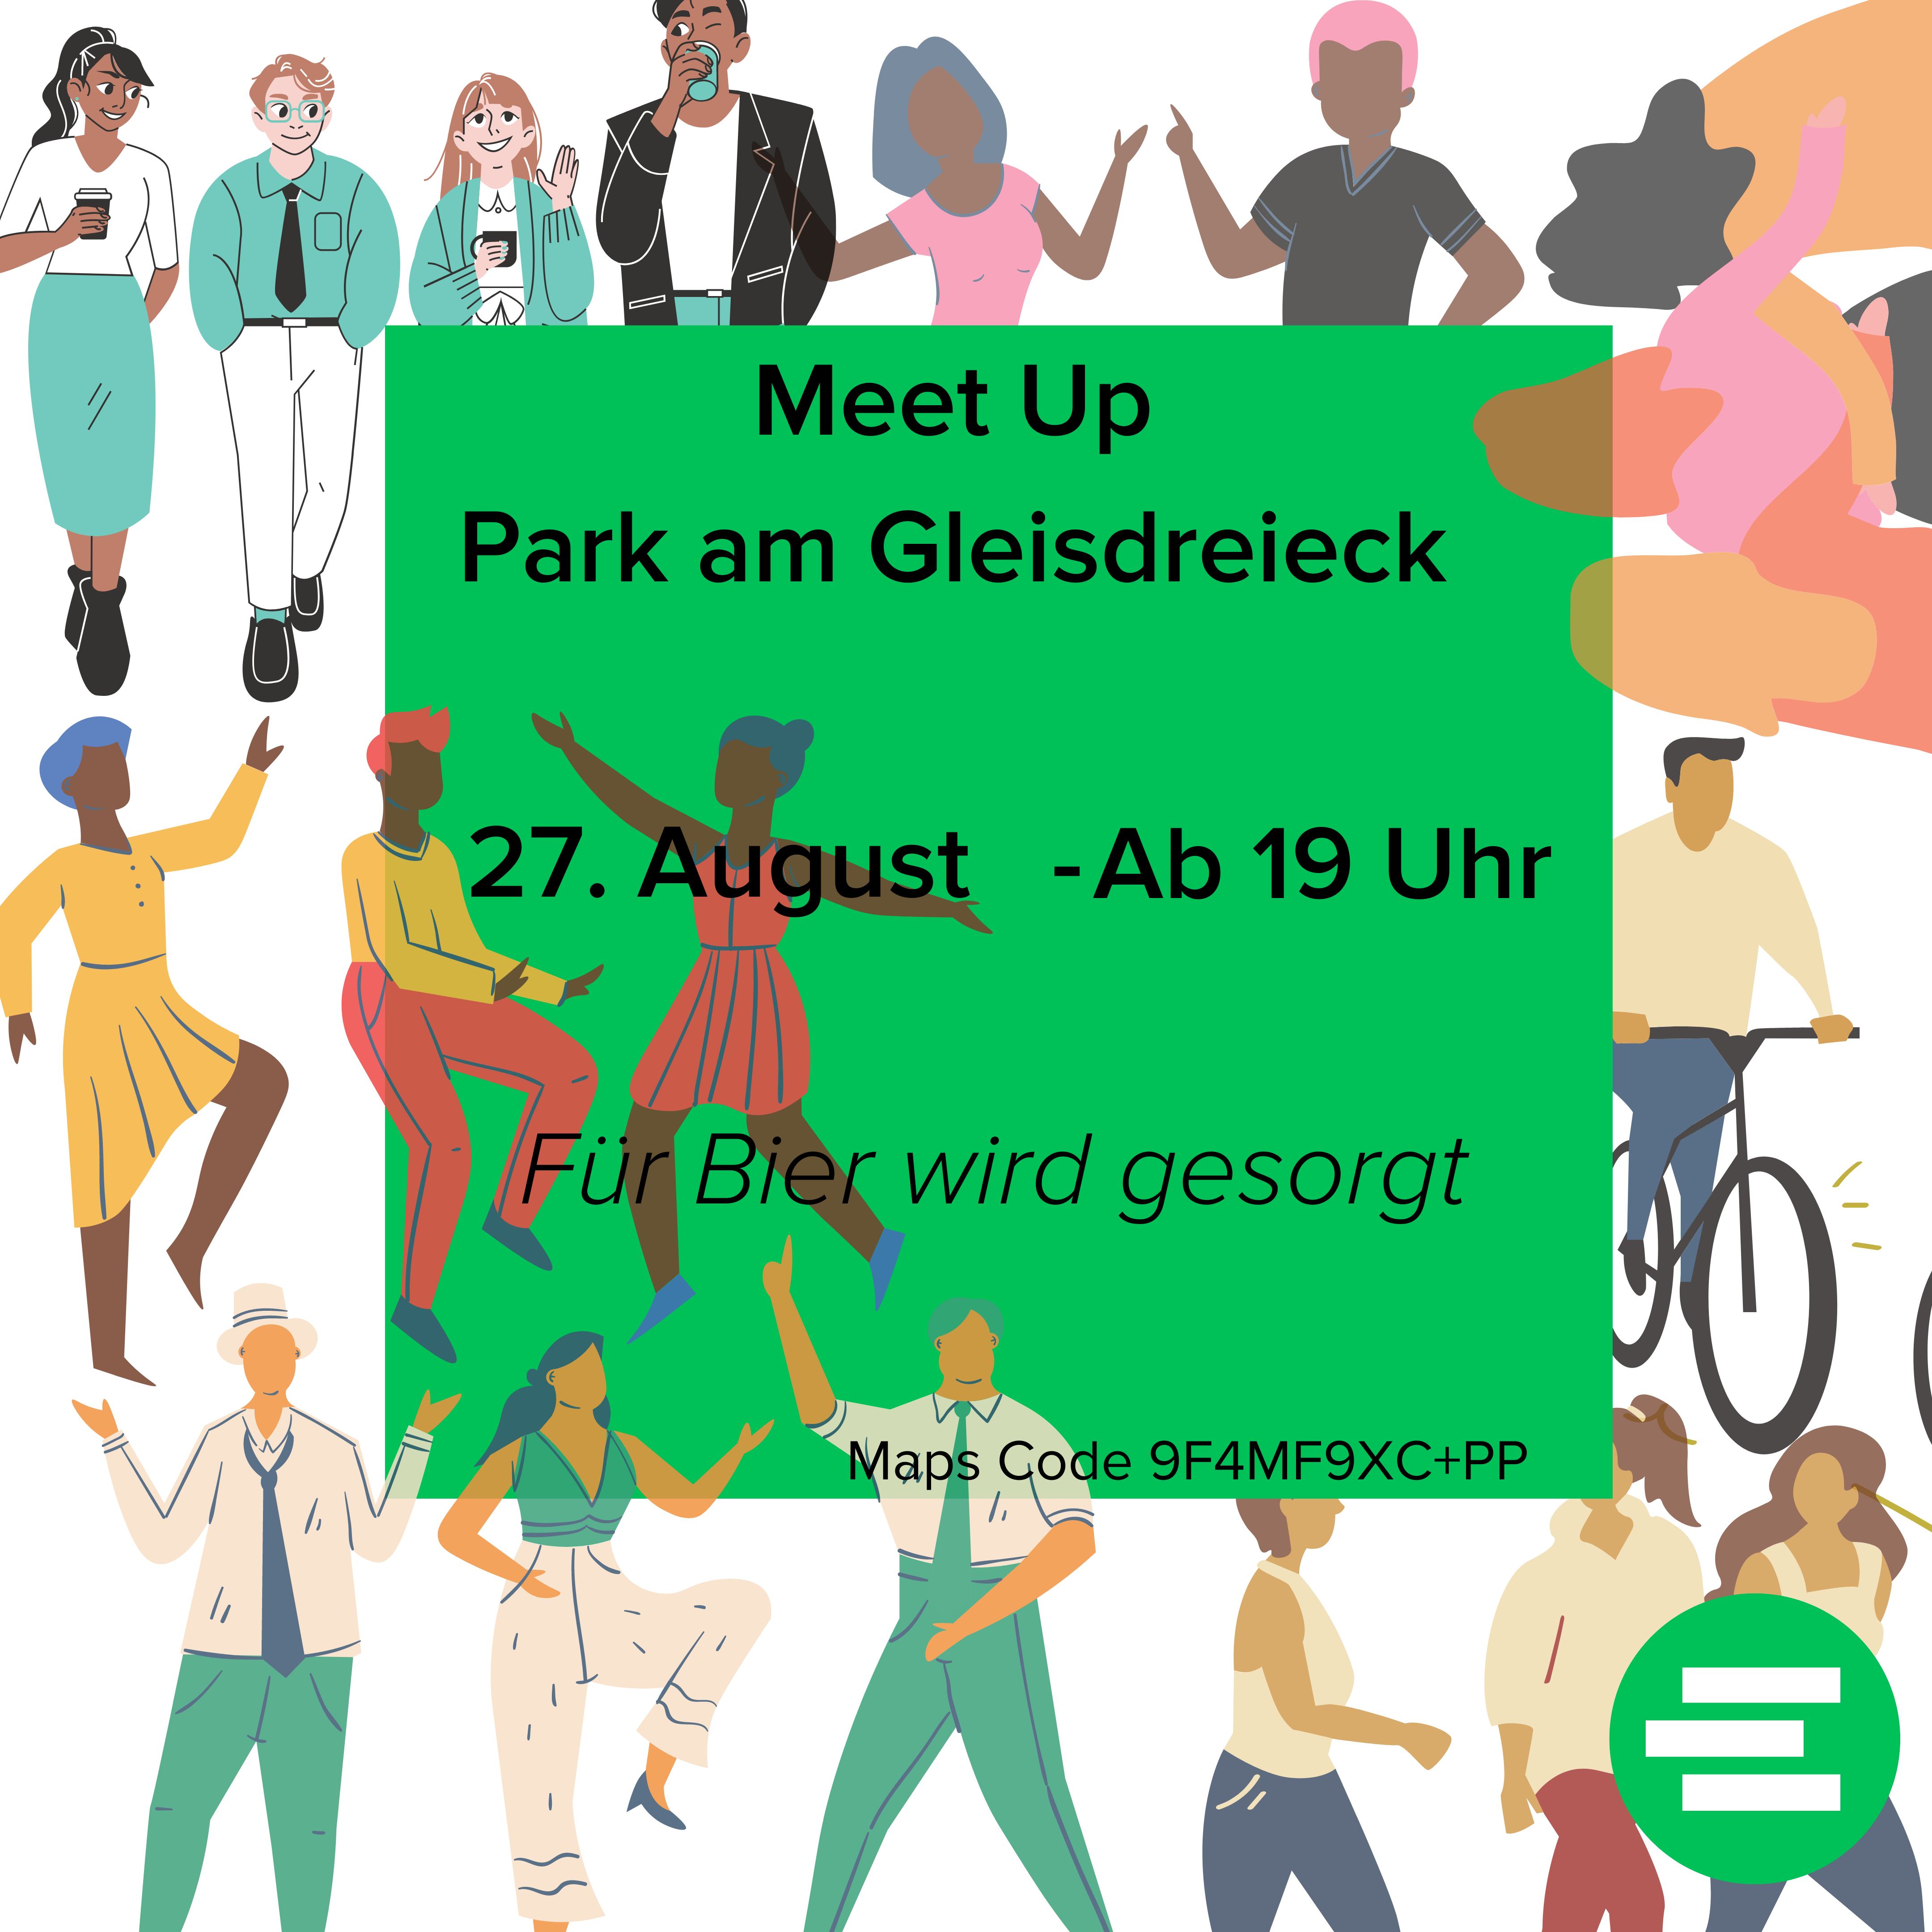 Meet Up am Park am Gleisdreieck